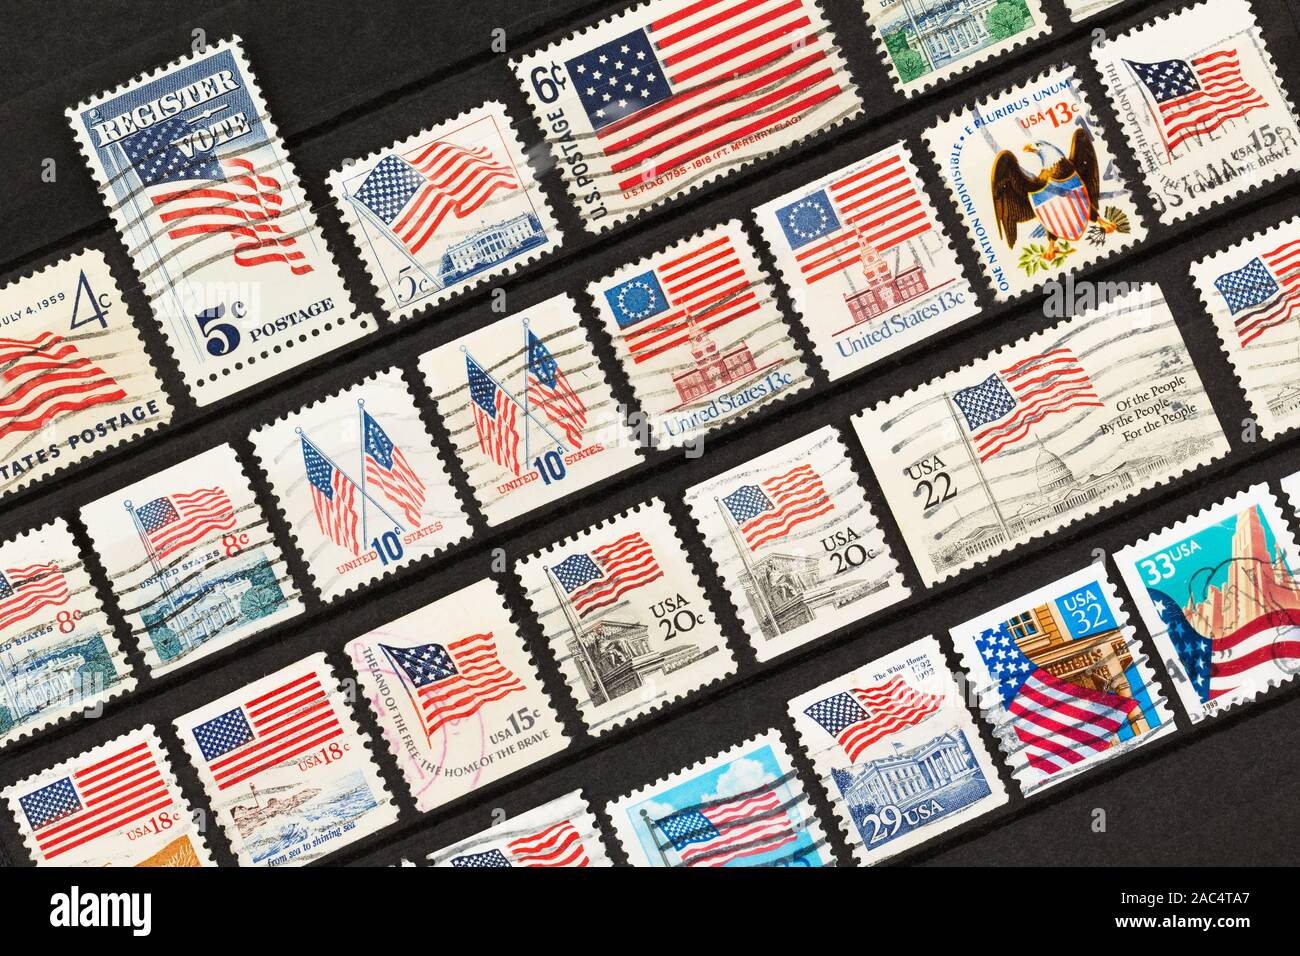 SEATTLE WASHINGTON - Novembre 28, 2019: American francobolli con le stelle e strisce di bandiera nel corso degli anni. Righe di francobolli con noi le bandiere. Foto Stock